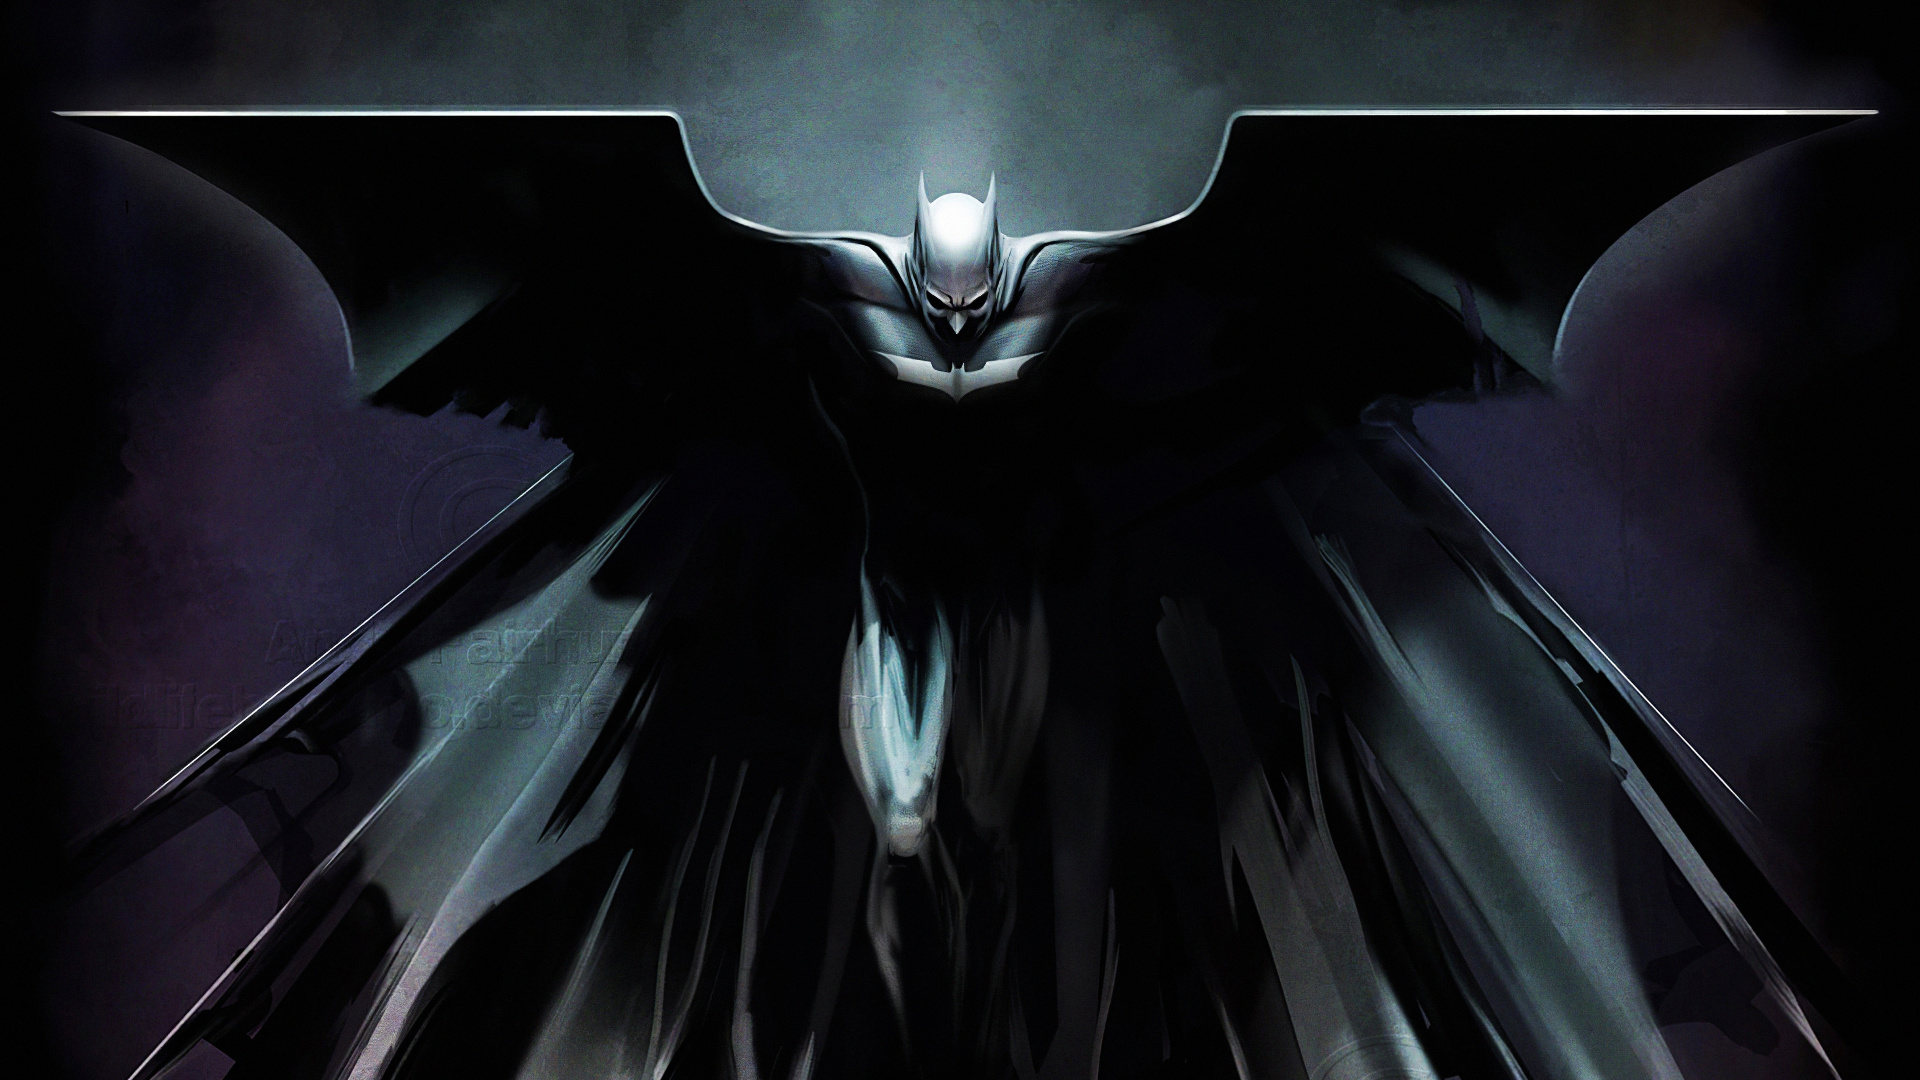 蝙蝠侠, 黑暗骑士的三部曲, 艺术, 分形技术, 翼 壁纸 1920x1080 允许